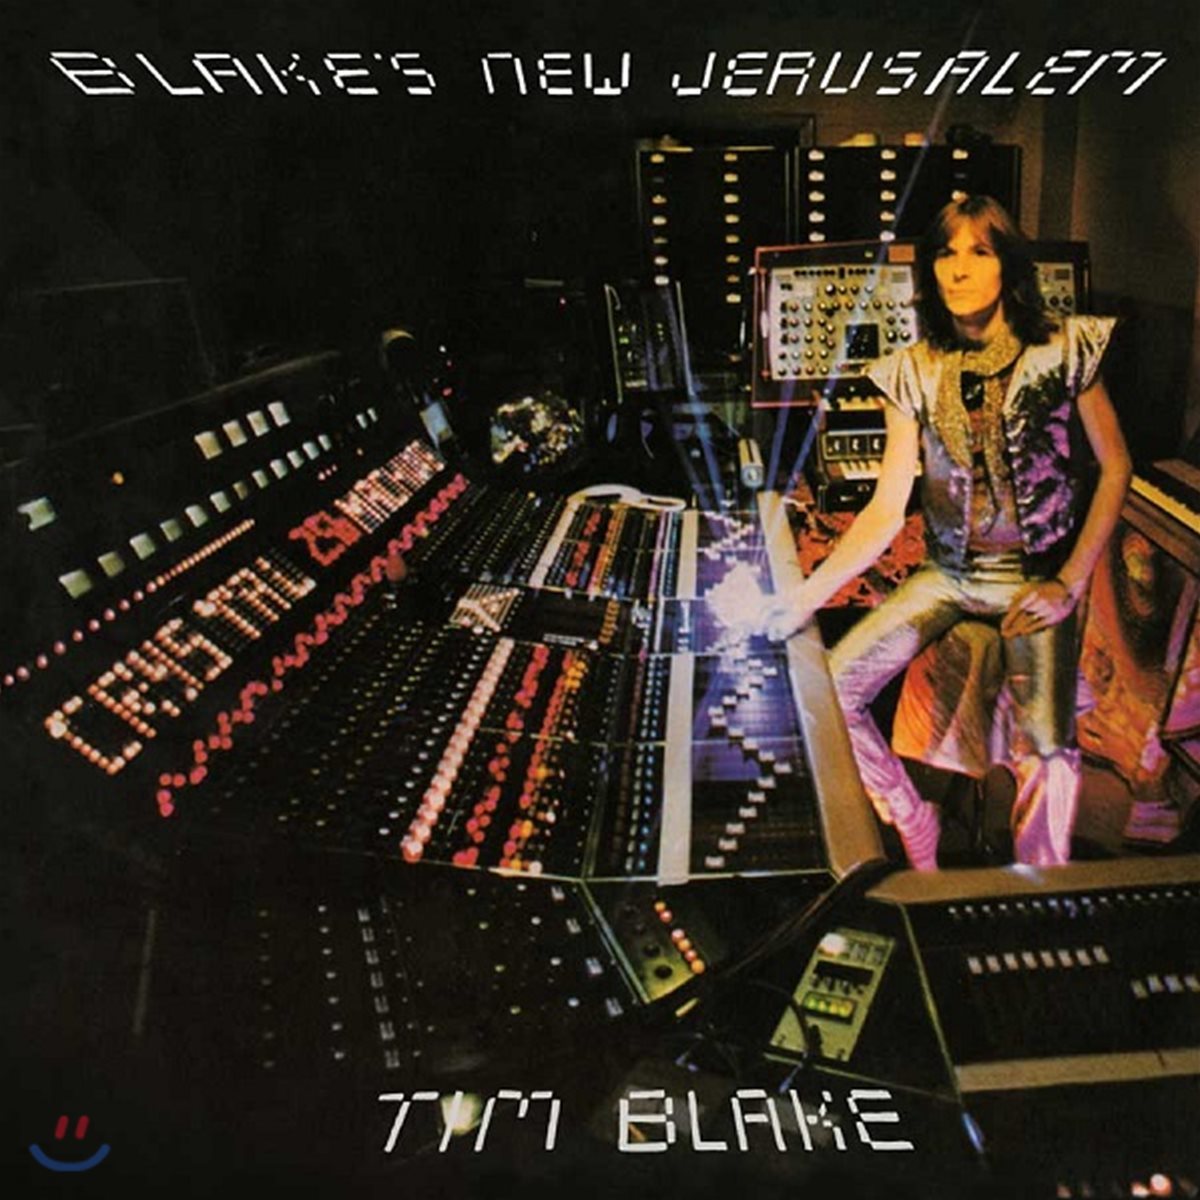 Tim Blake (팀 블레이크) - Blake's New Jerusalem [LP]